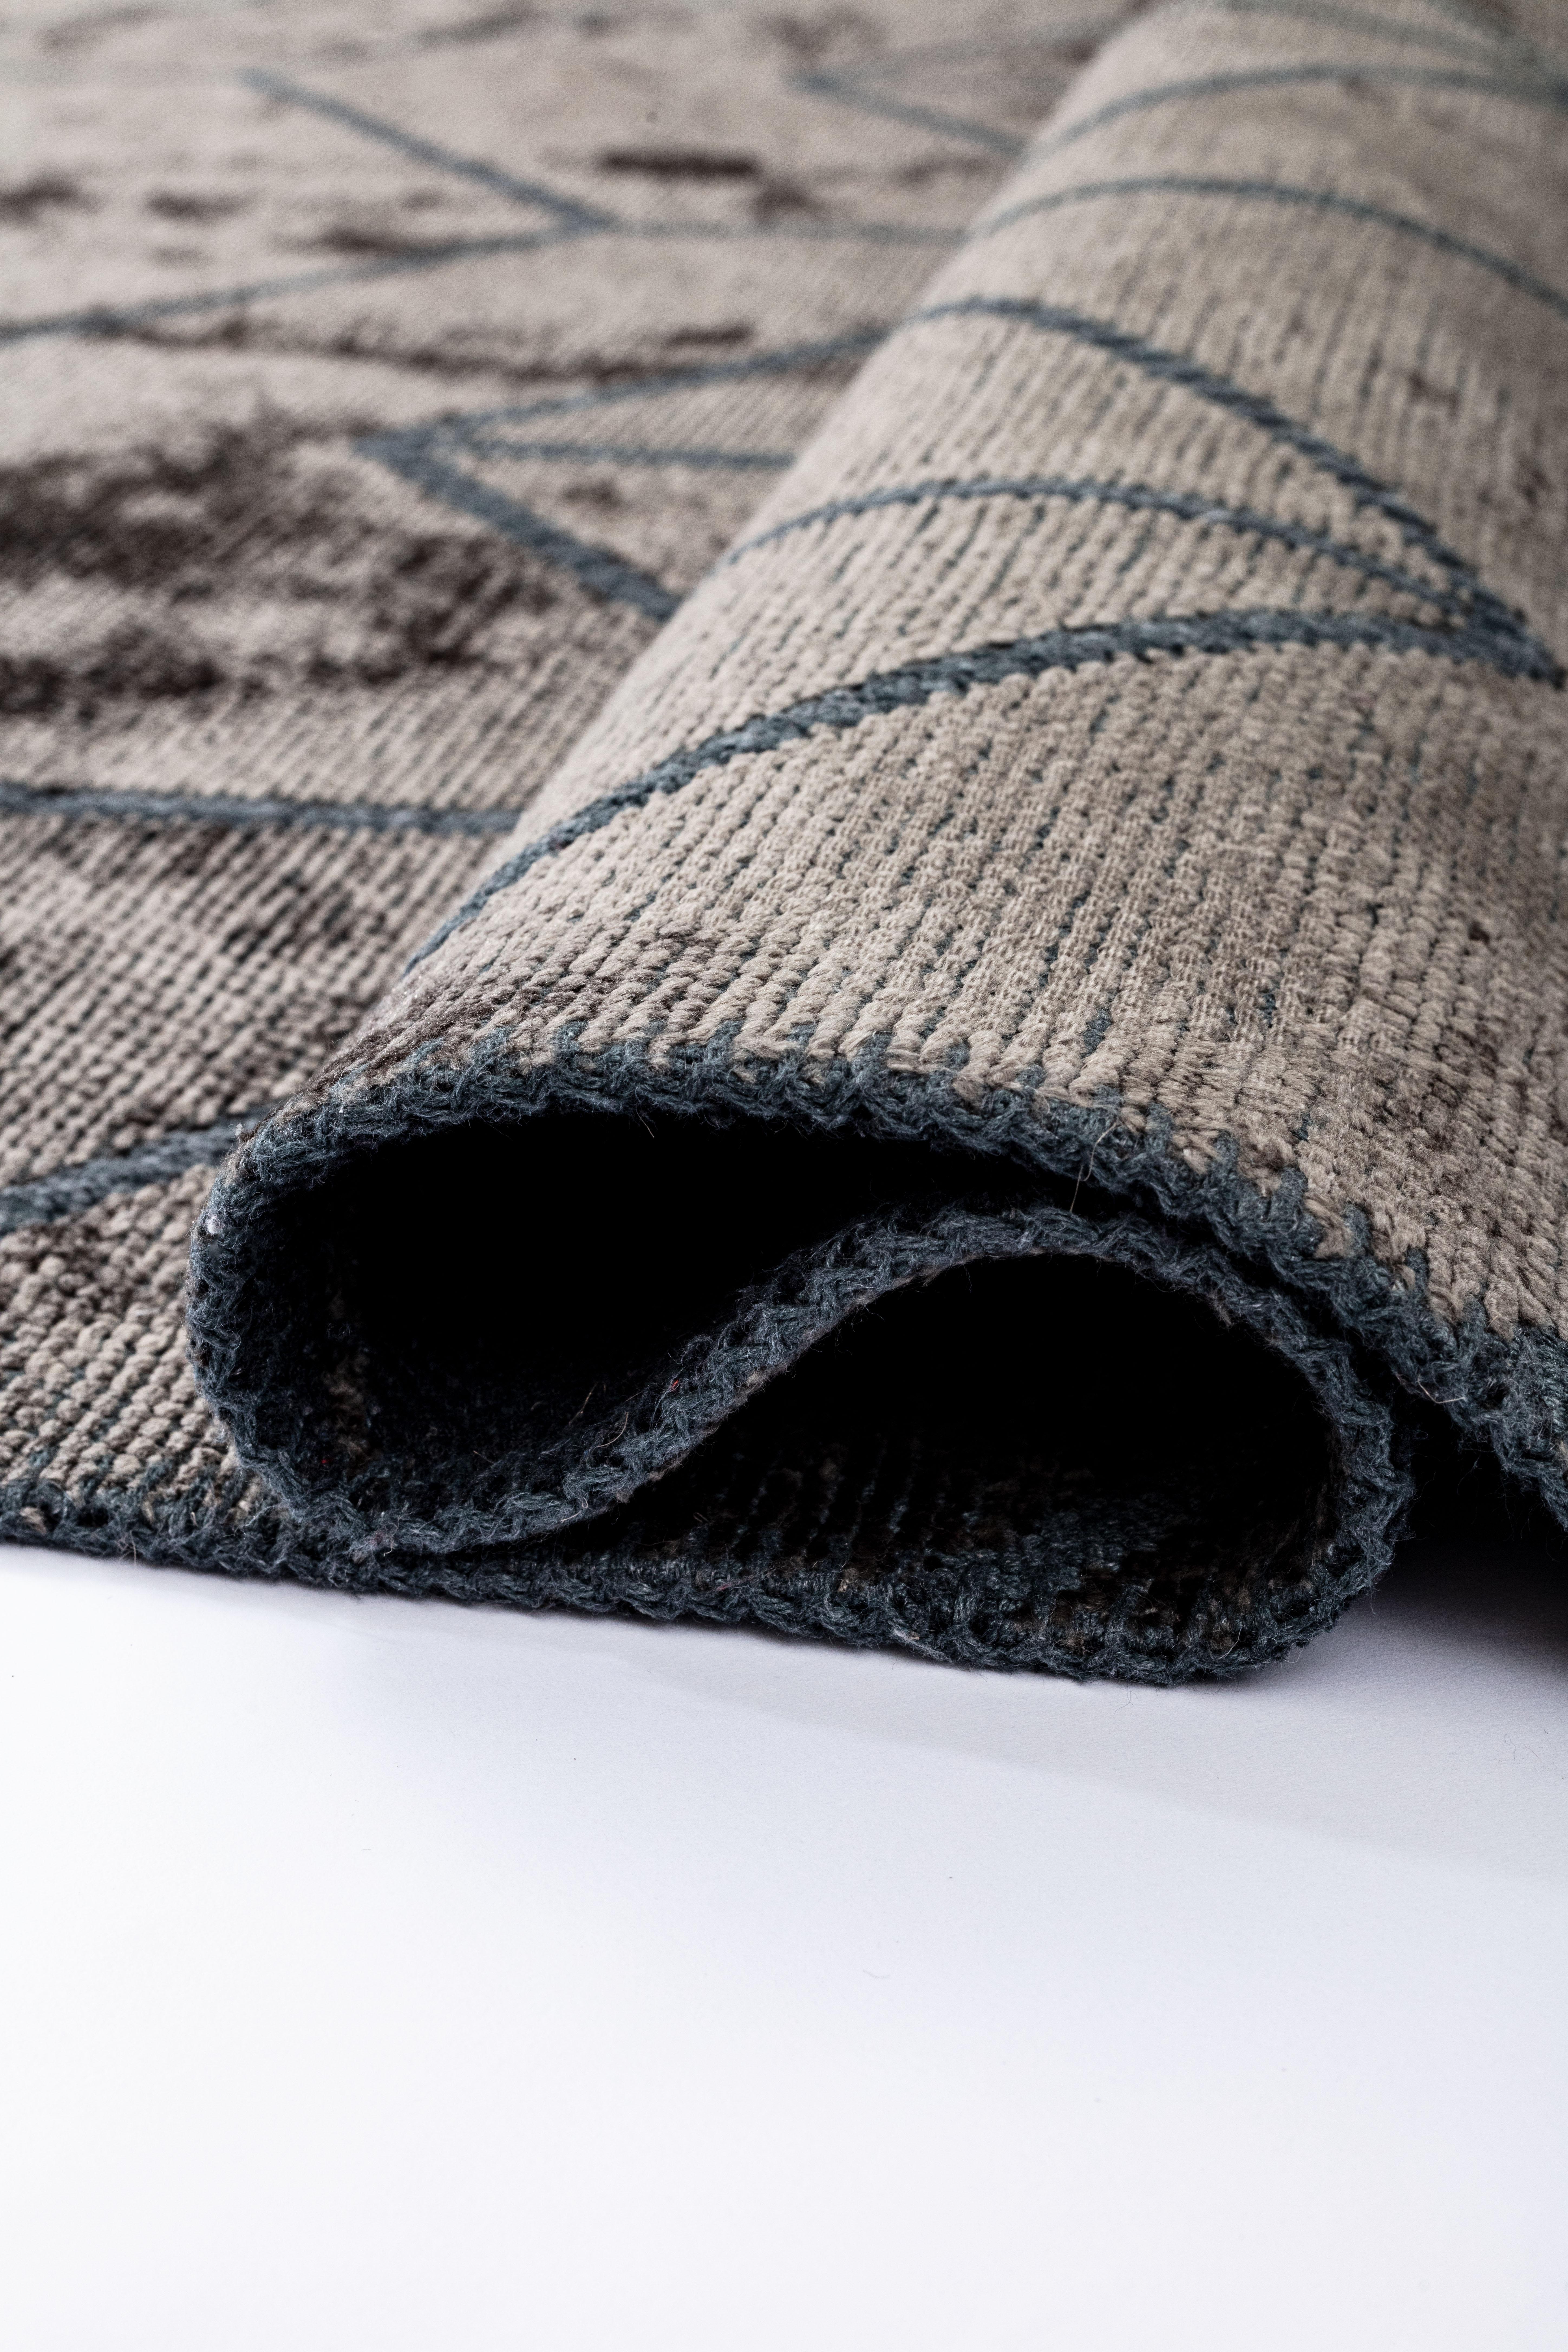 Die Rapture-Kollektion ist eine hochwertige Teppichkollektion, die 29 Teppichdesigns in 155 Design- und Farbkombinationen umfasst, insgesamt 620 verschiedene Design-Farb-Größen-Kombinationen. Die Teppiche eignen sich gut für den Einsatz in